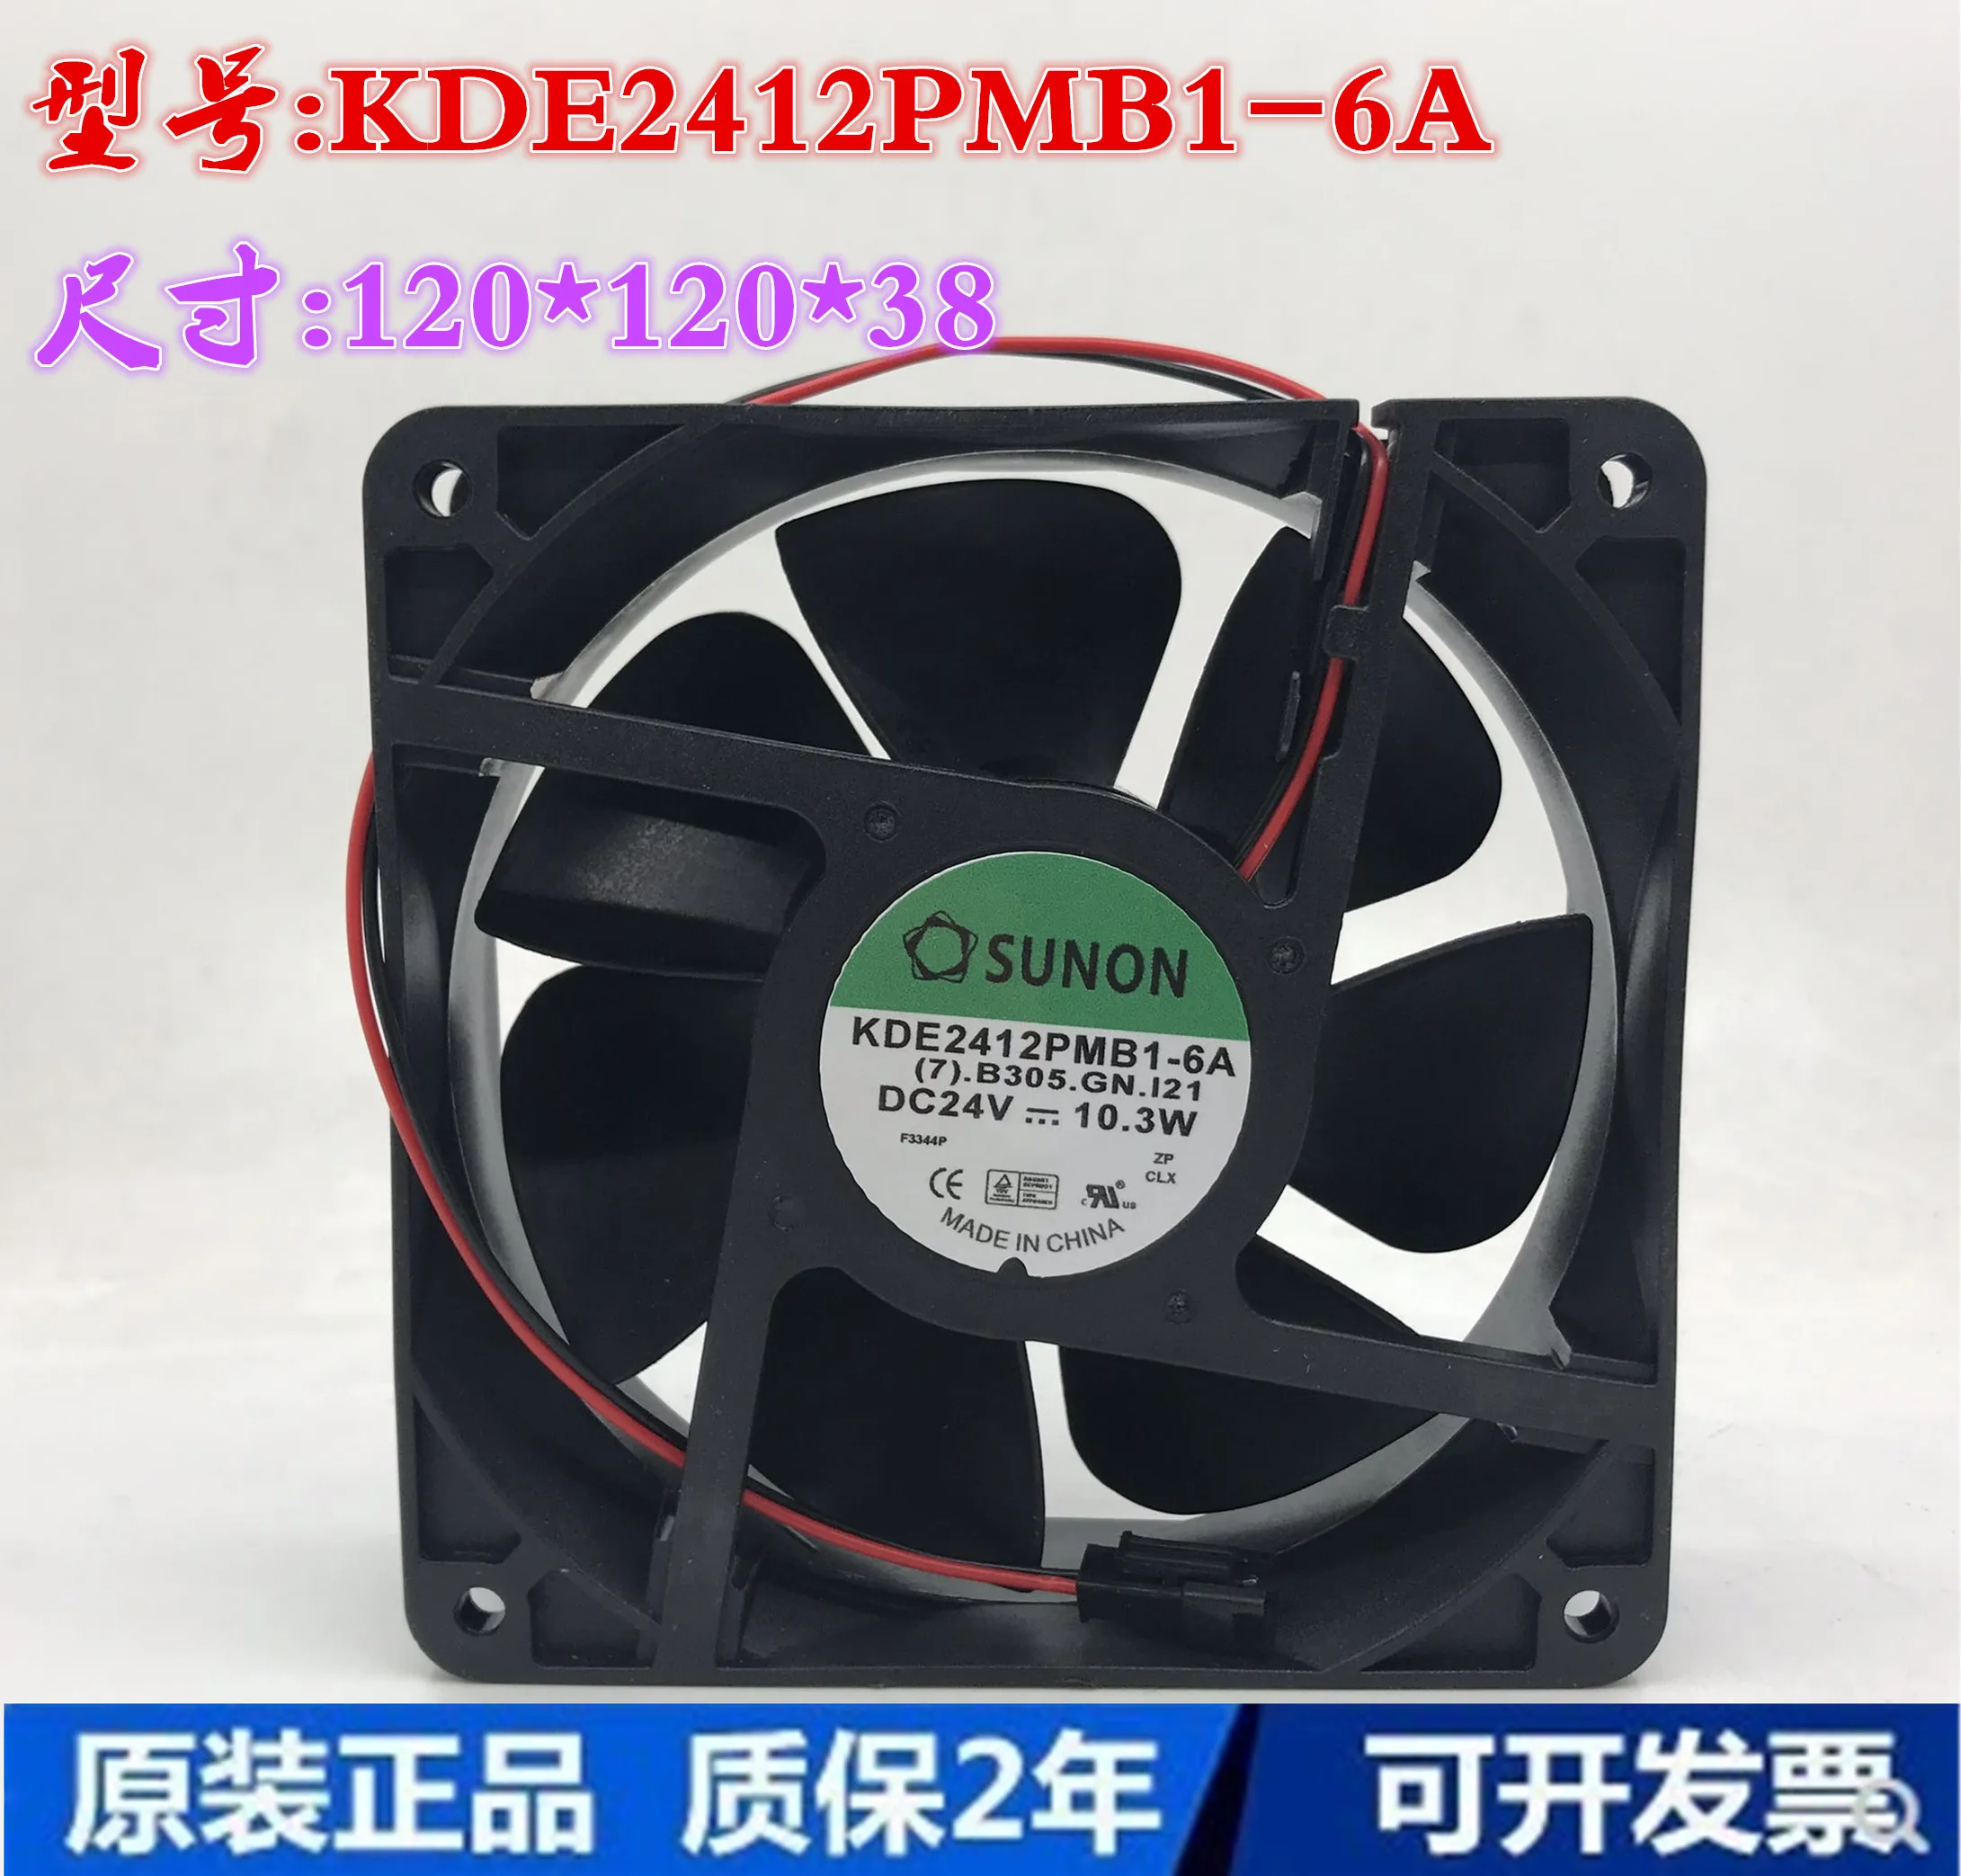 

SUNON KDE2412PMB1-6A (7).B305.GN.121 DC 24V 10.3W 120x120x38mm 2-Wire Server Cooling Fan